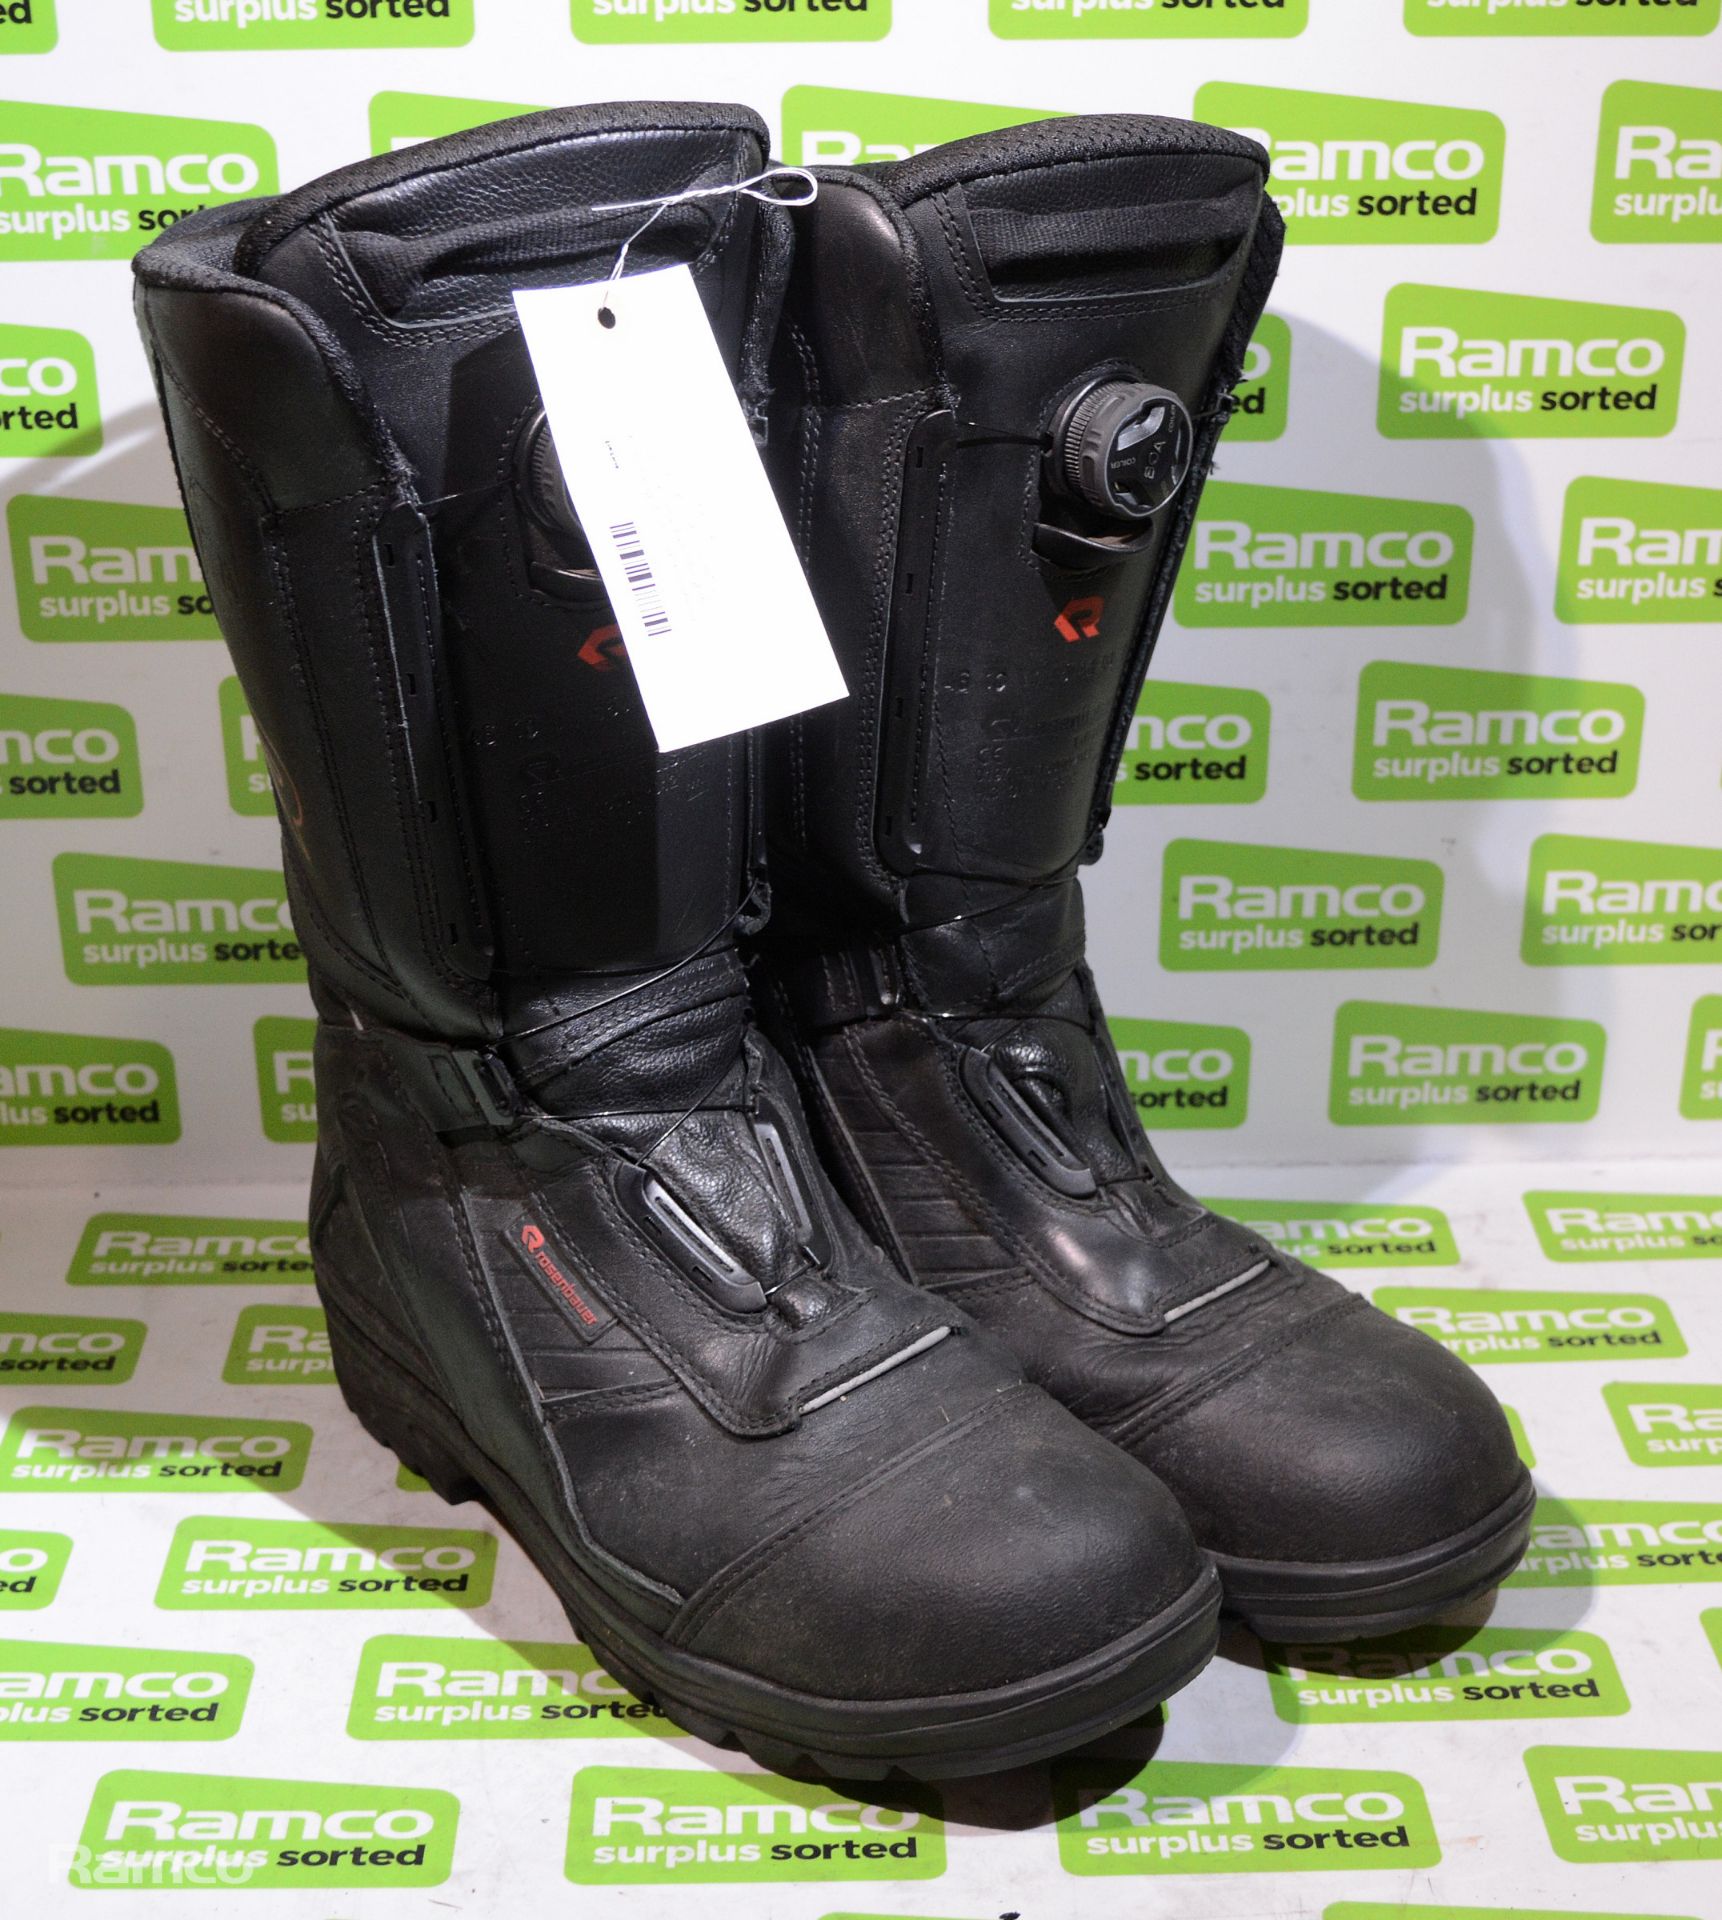 Rosenbauer Sympatex Fire & Heat Resistant Boots Pair - Size: EU 46, UK 11.5 - 30x30x40cm